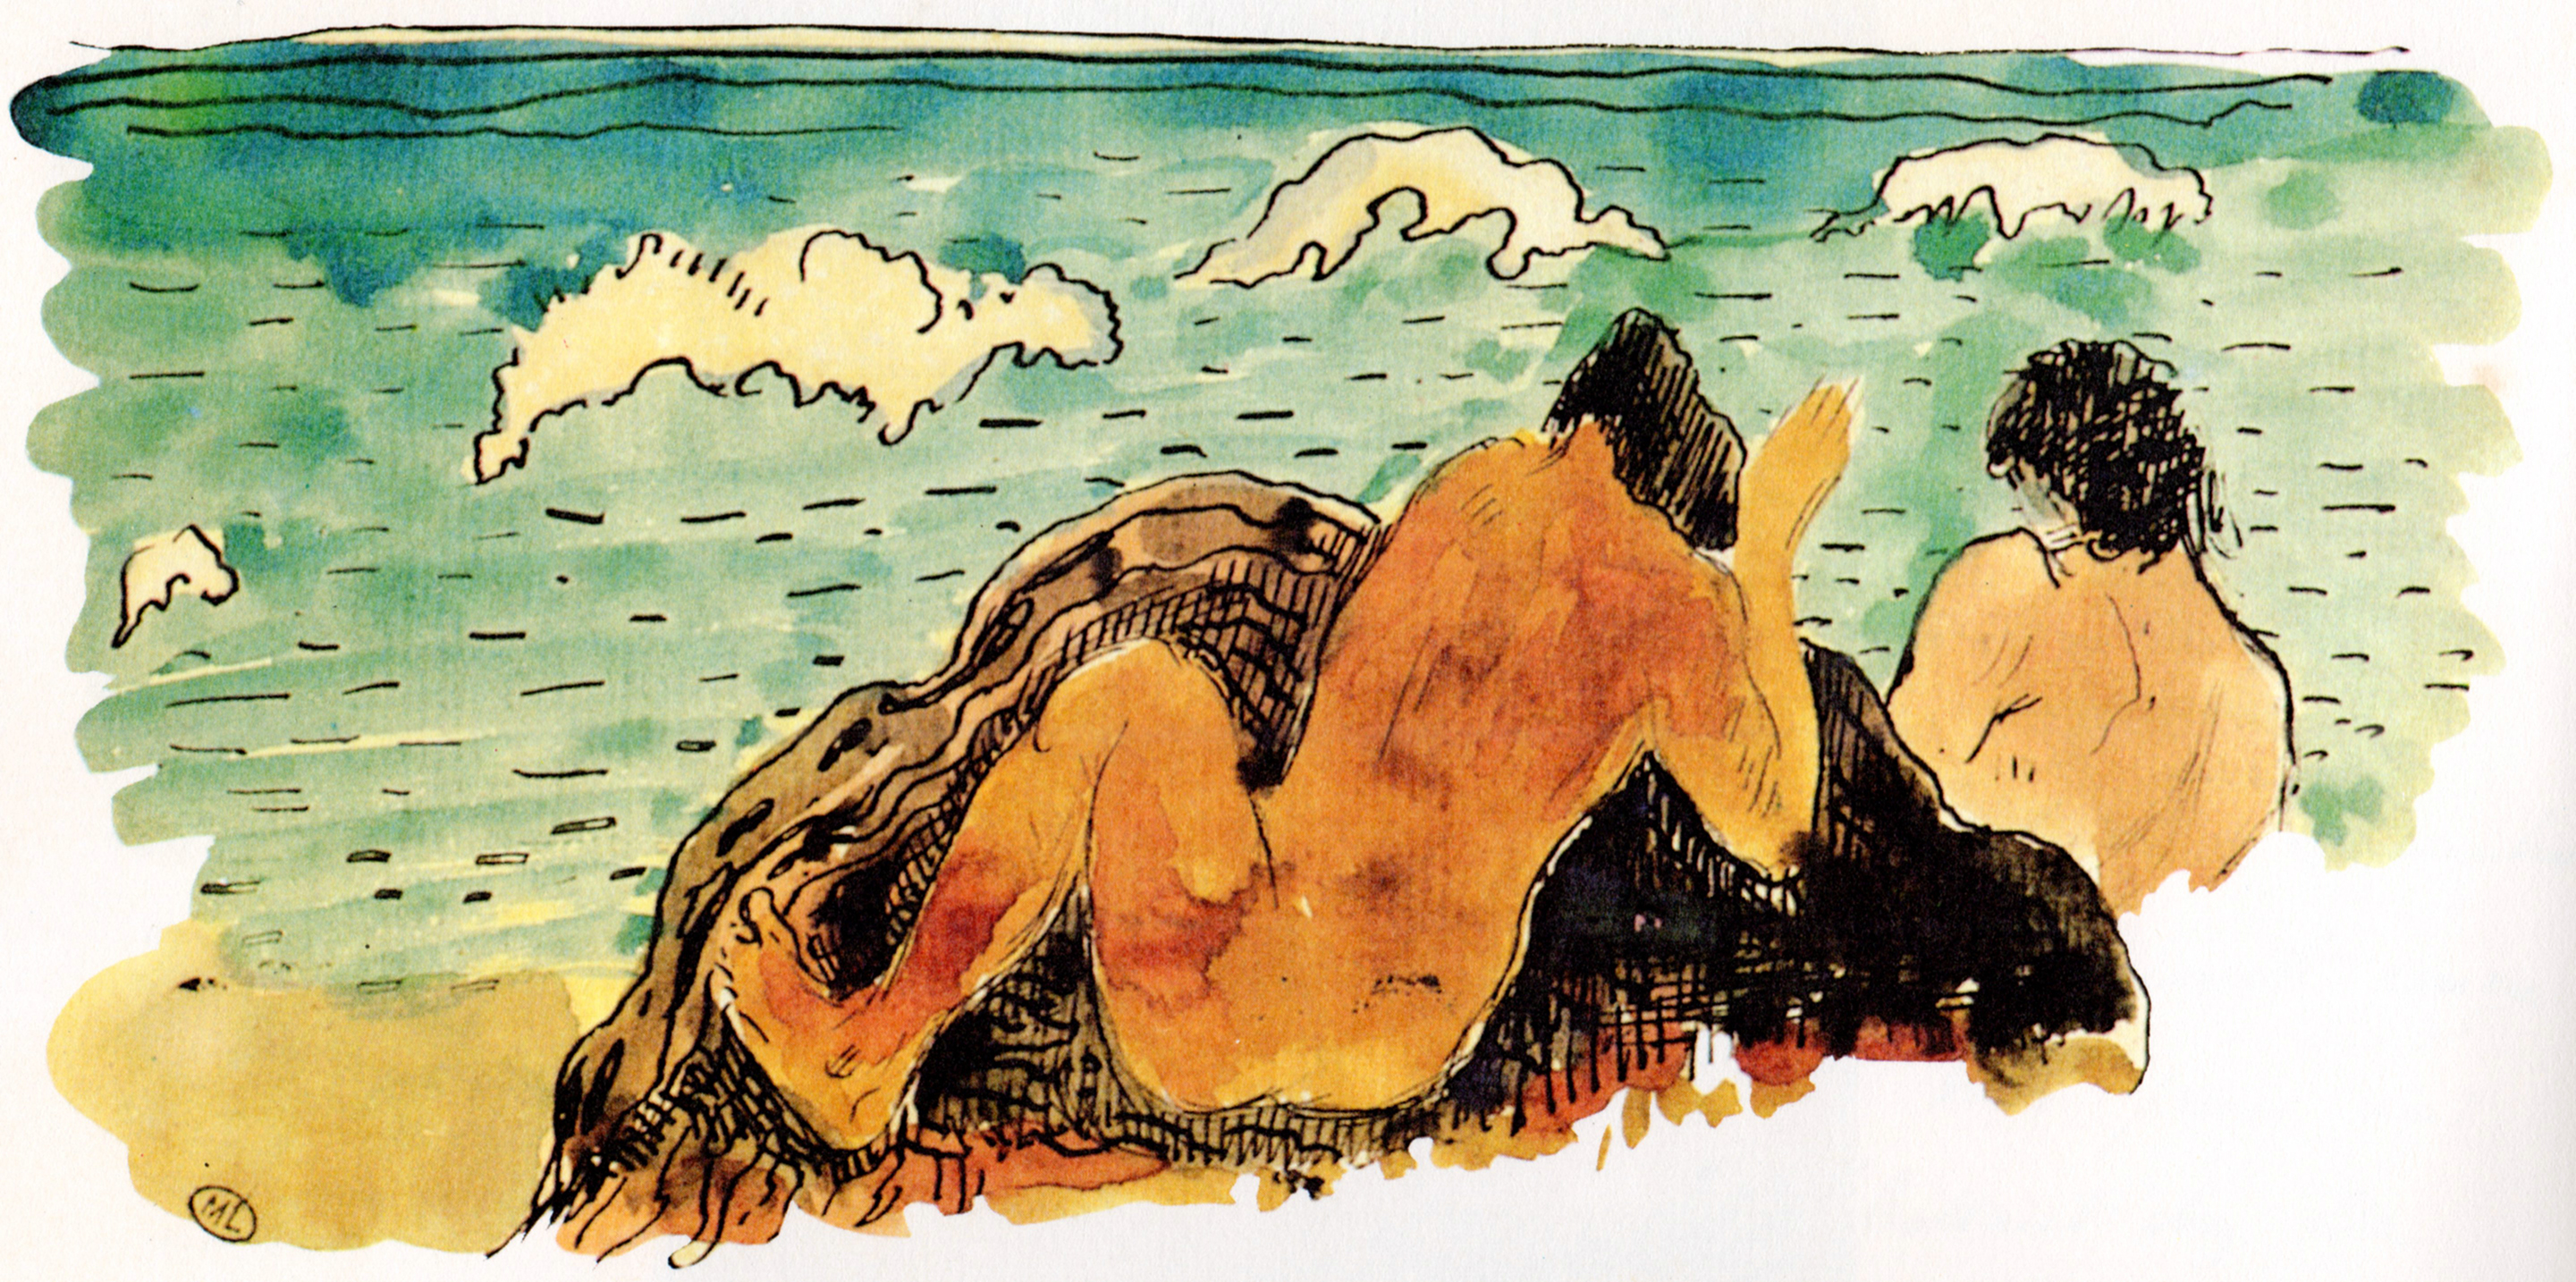 Ruahatu et le déluge, aquarelle de Paul Gauguin rajoutée dans Noa Noa en 1895.